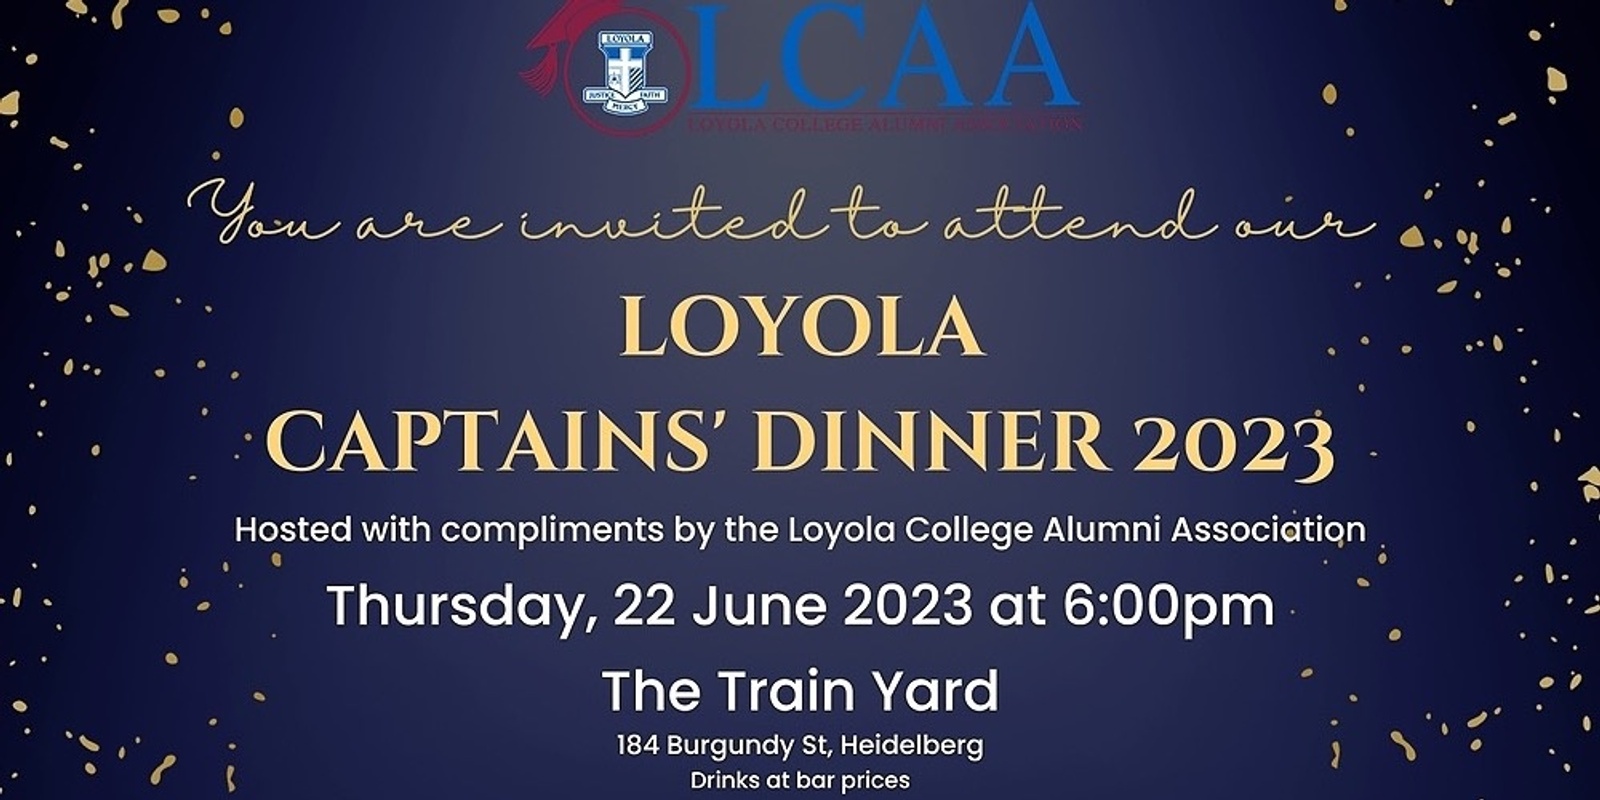 Banner image for Loyola Captain's Dinner 2023